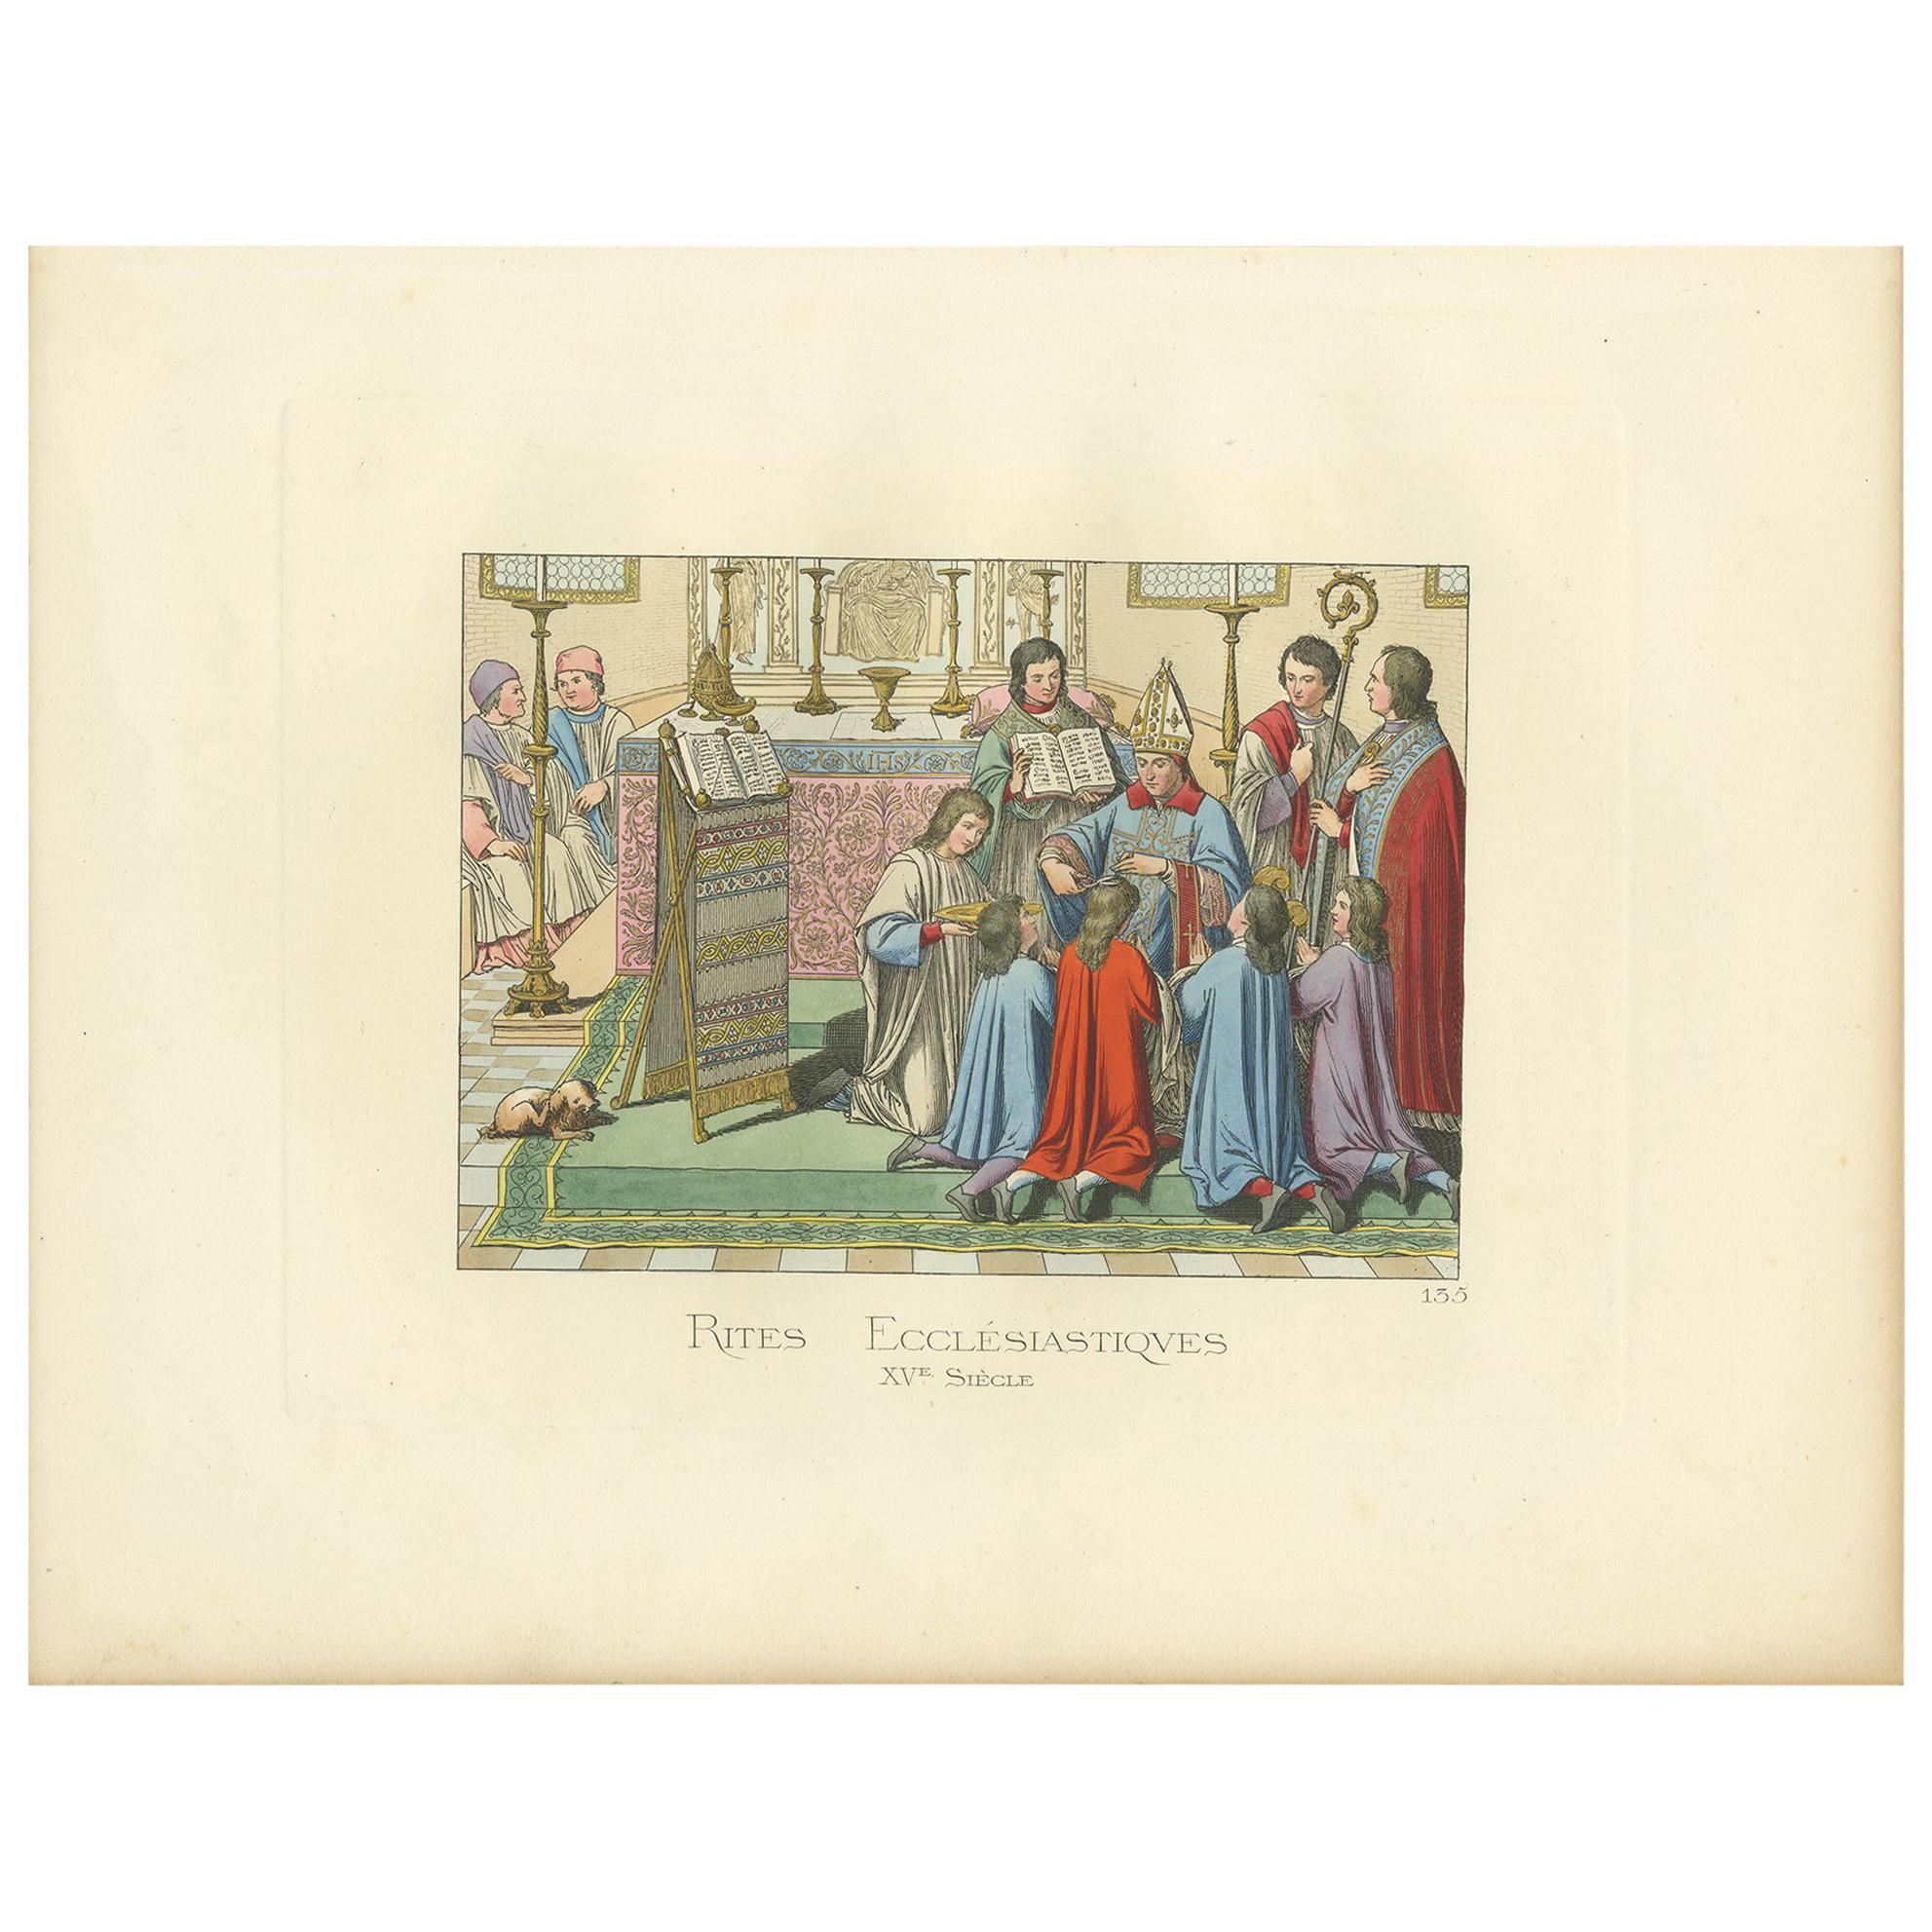 Antiker Druck von Ecclesiastical Rites, 15. Jahrhundert, von Bonnard, 1860